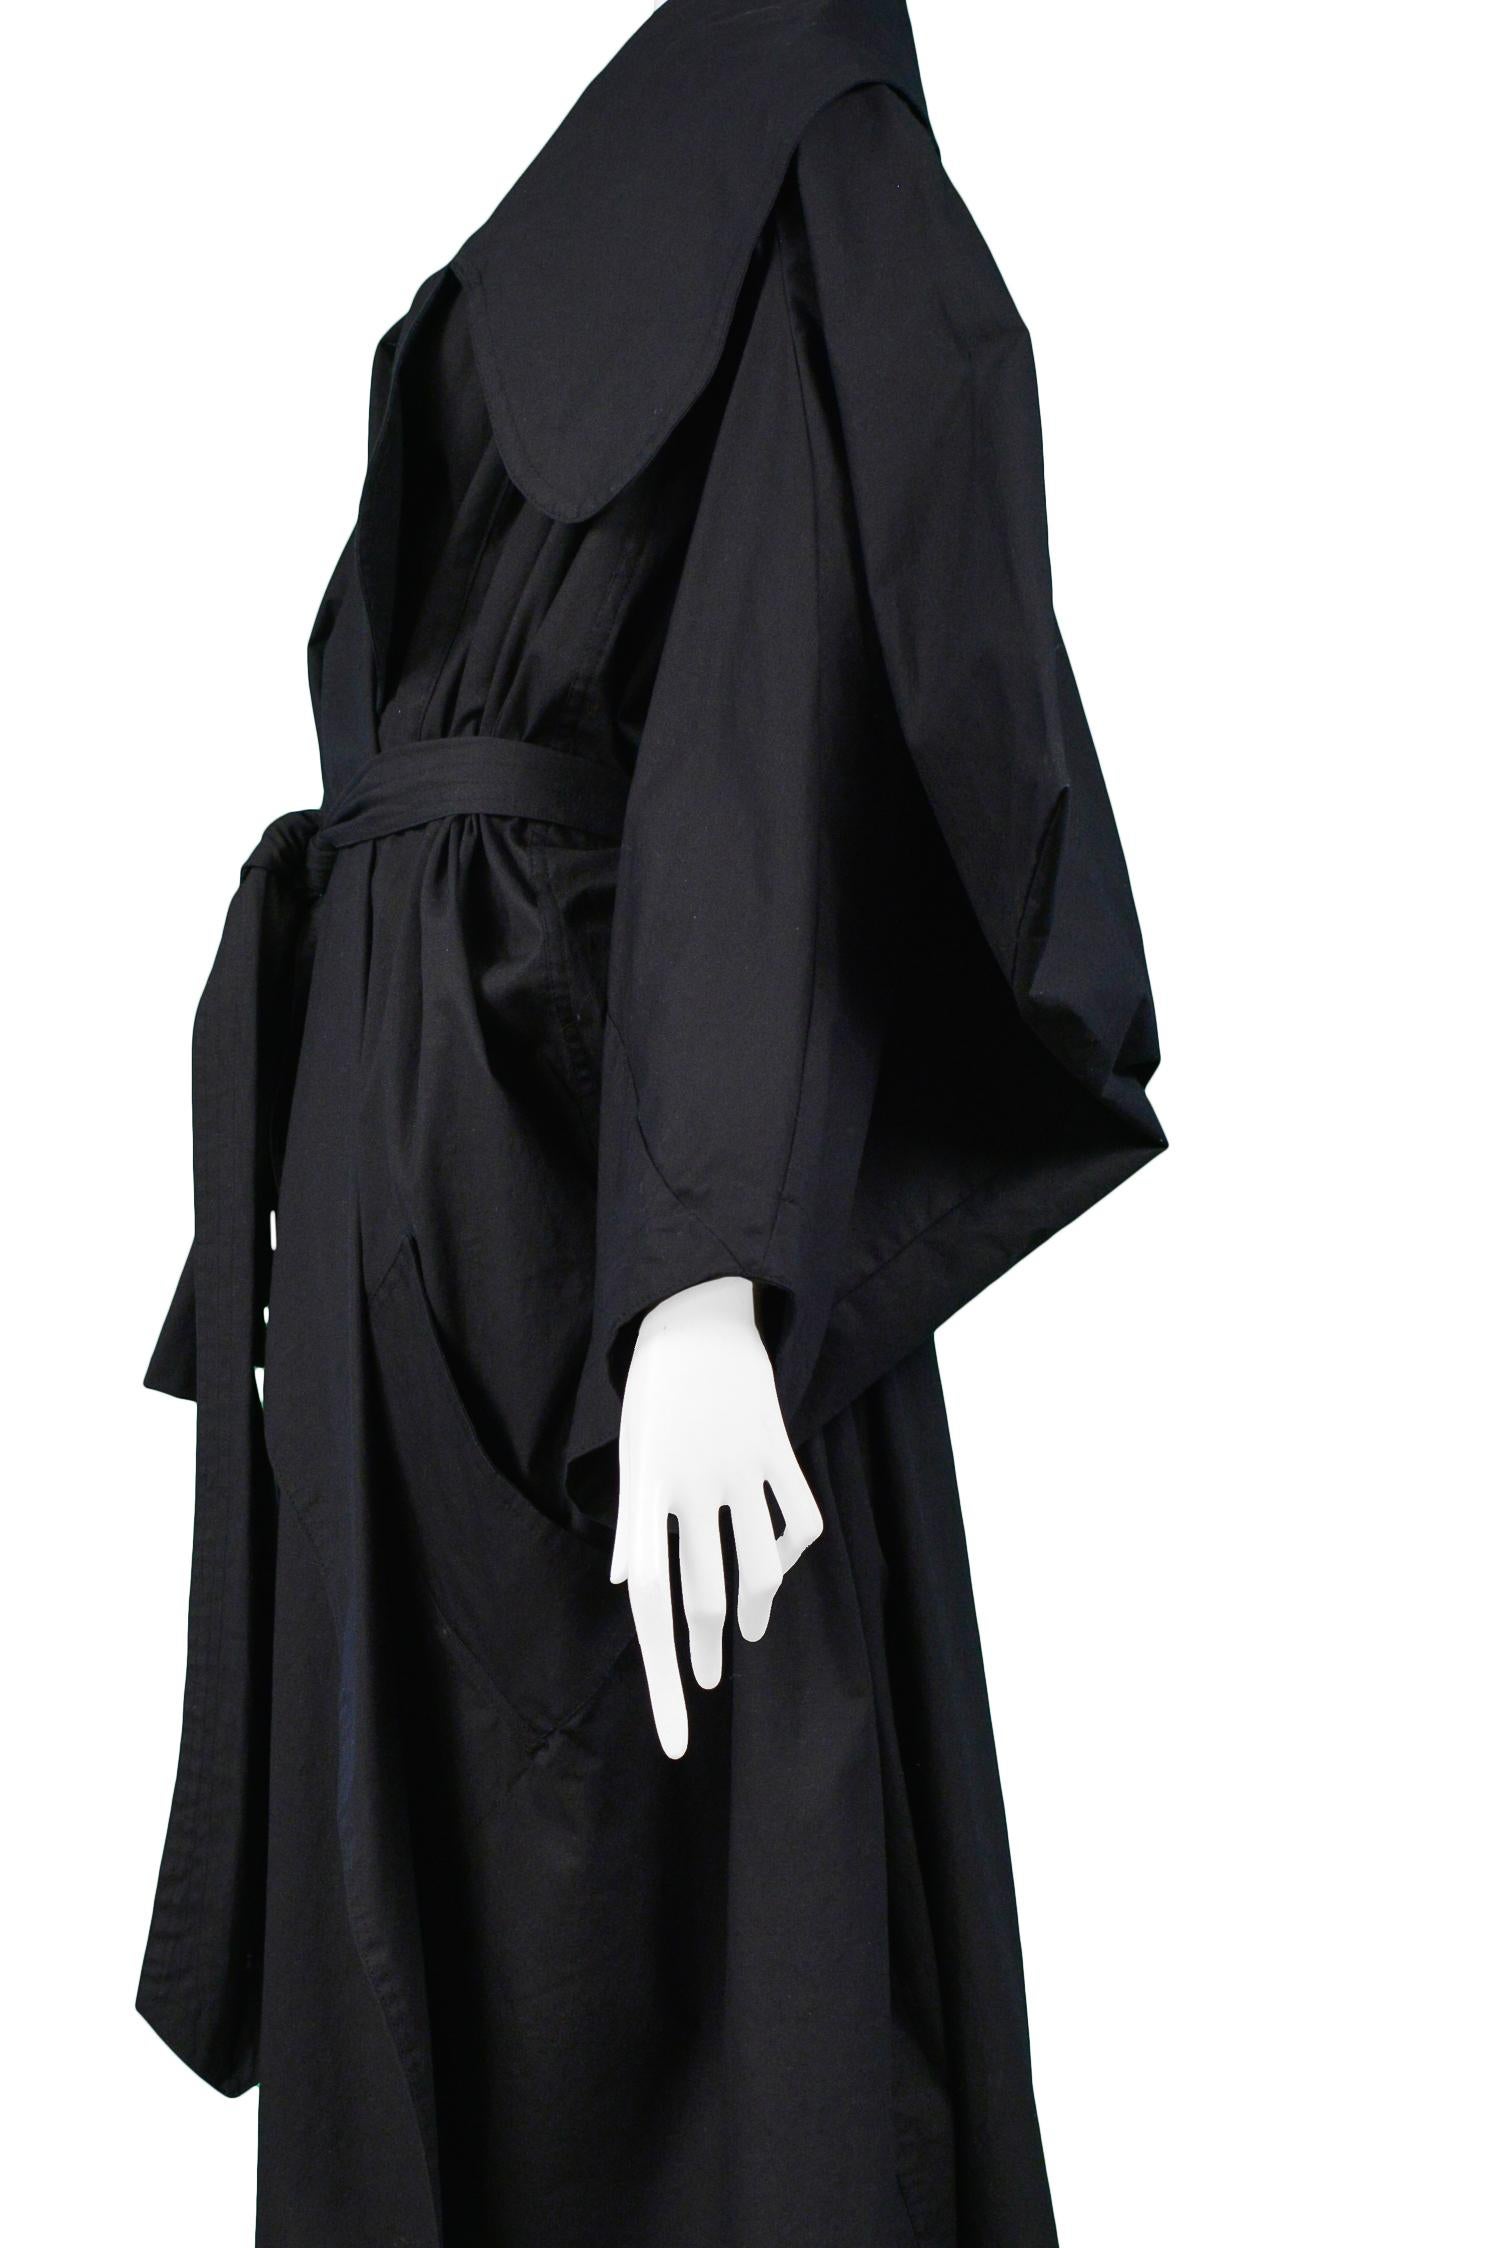 Vivienne Westwood Worlds End - Imperméable noir vintage « Witches ...